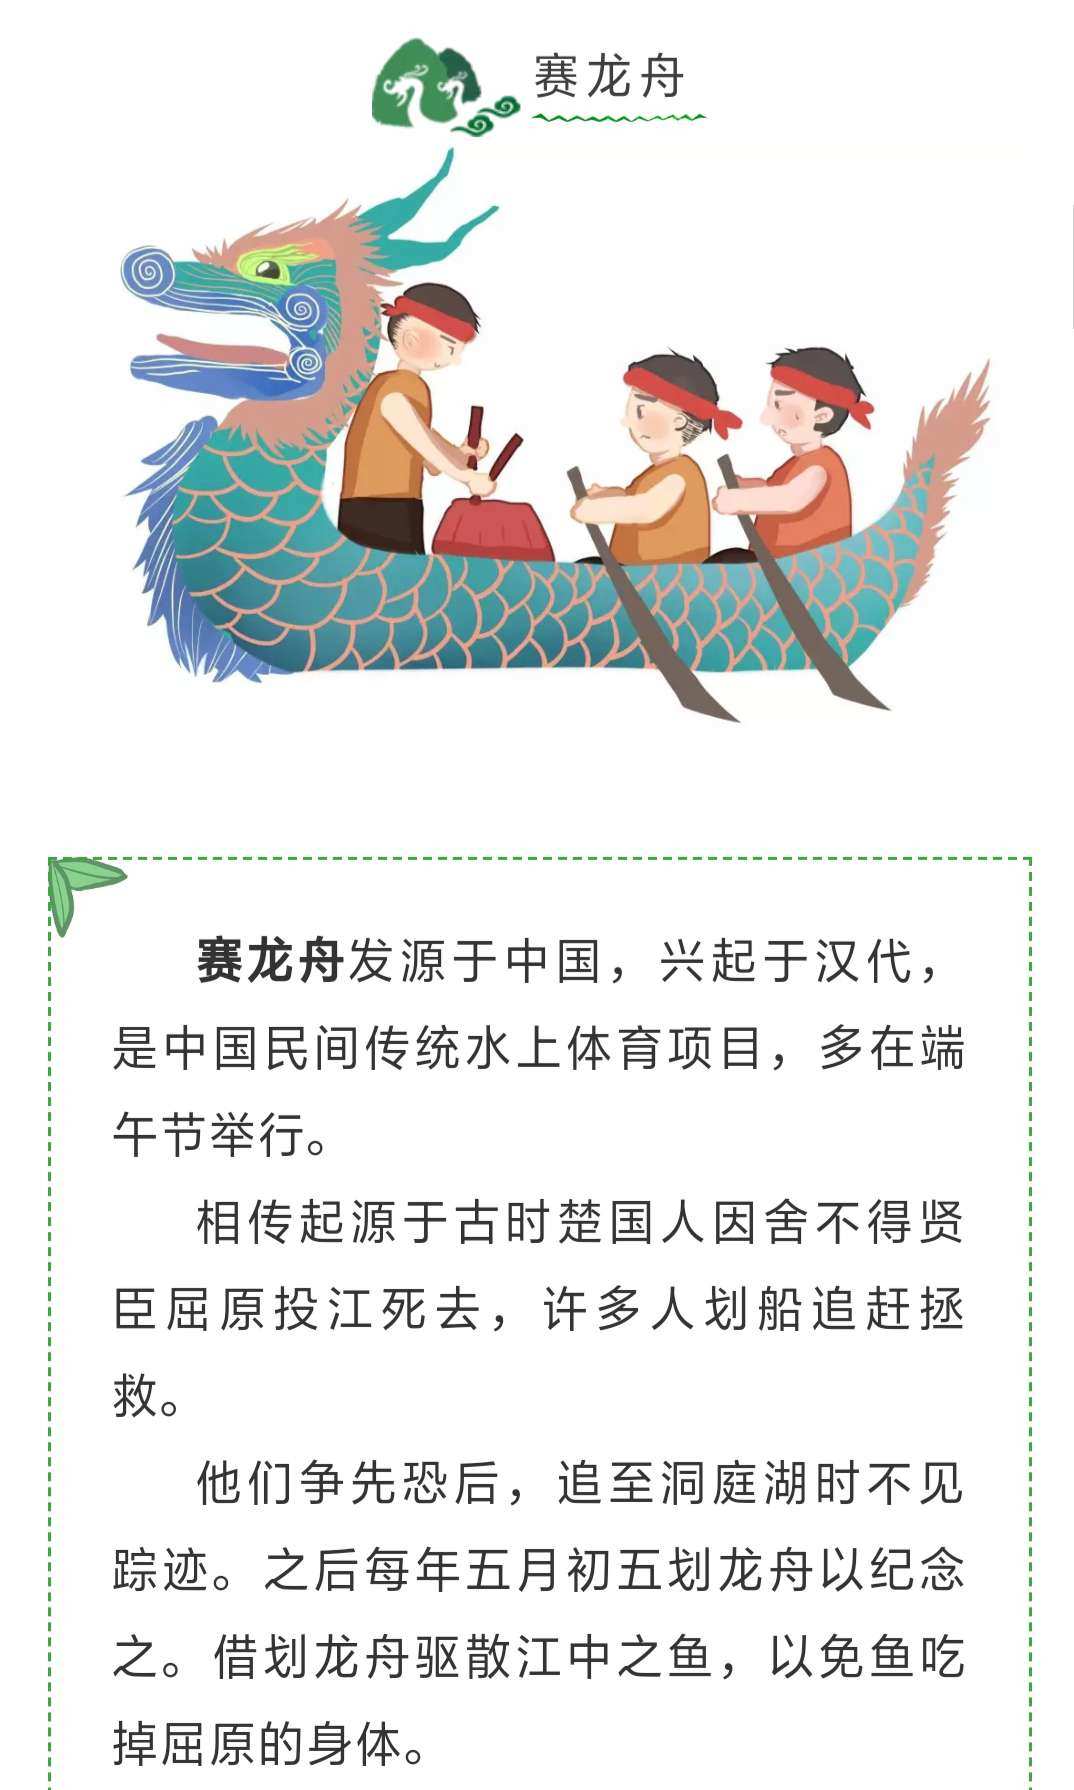 湖北省博物馆举办端午节民俗知识传播优秀传统节日文化